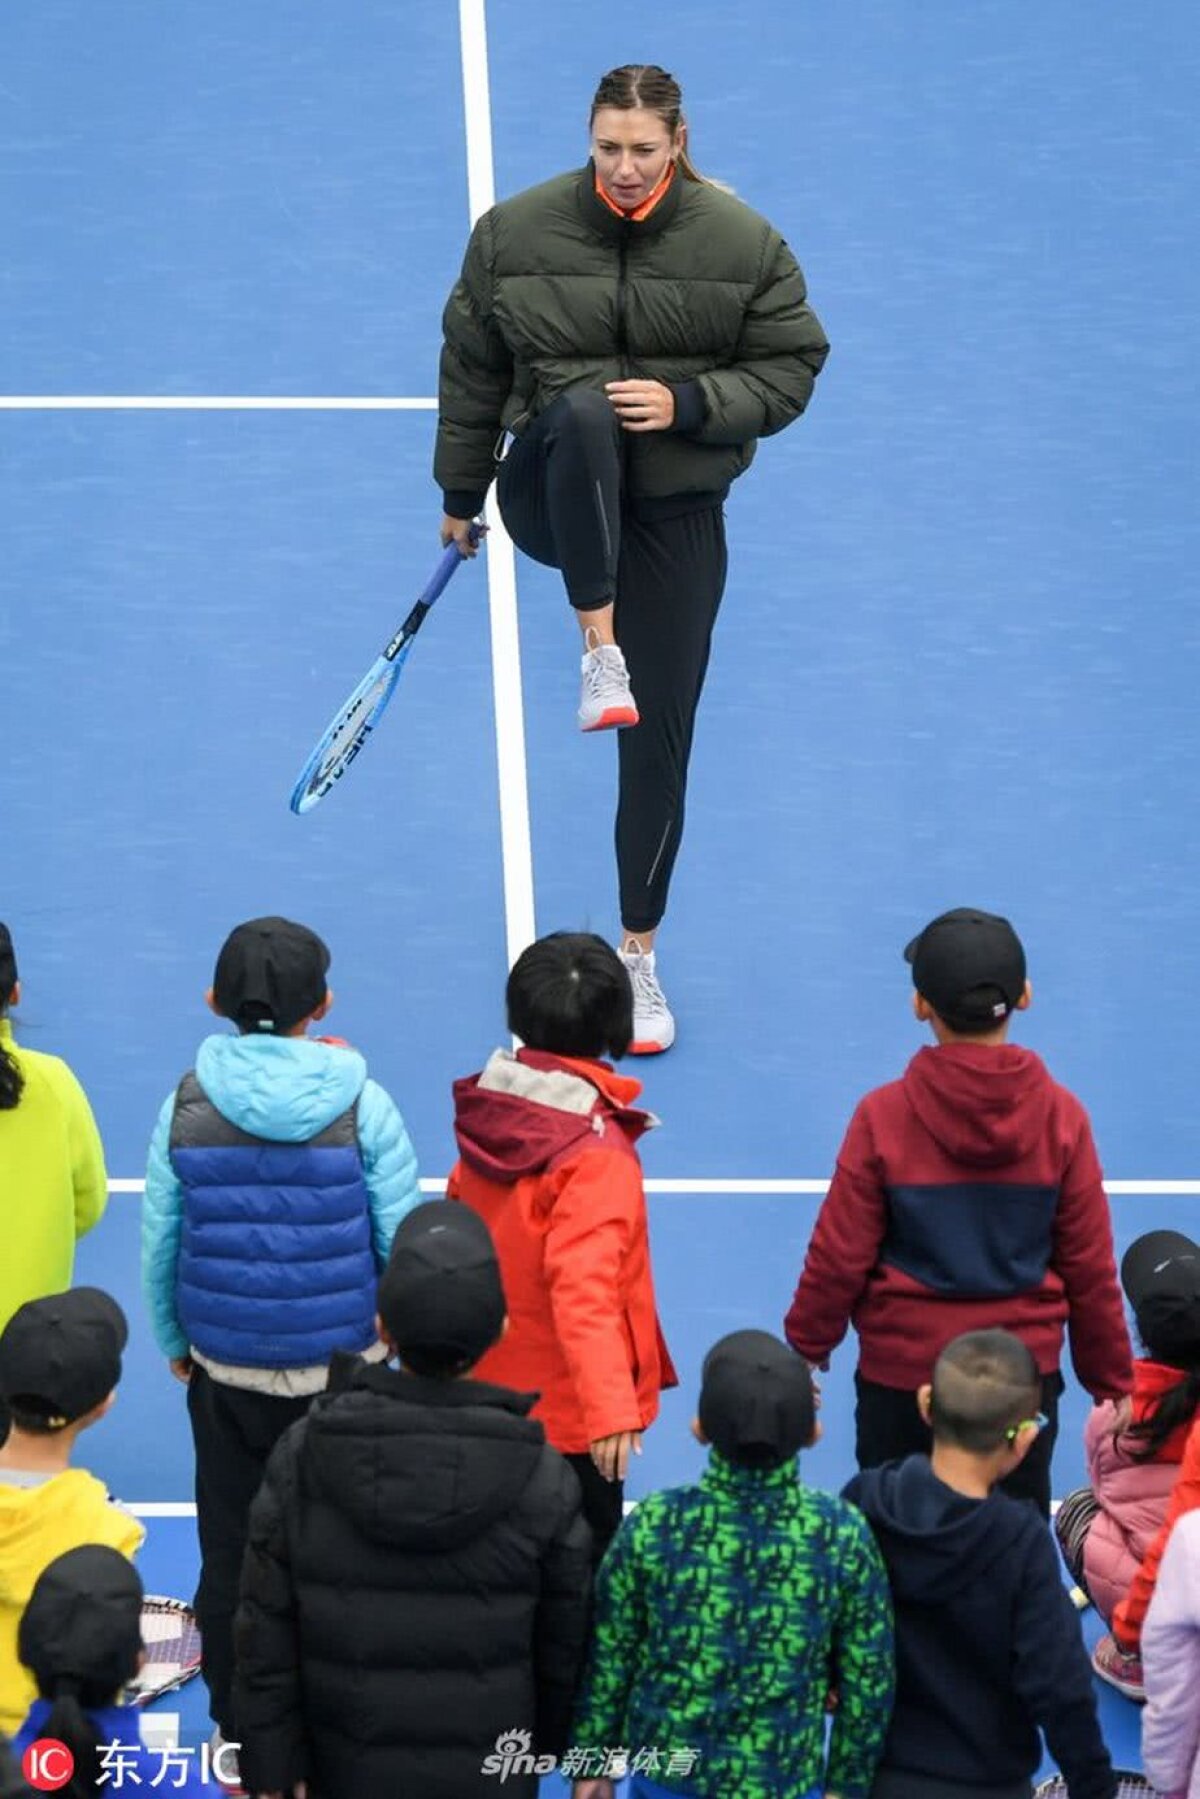 FOTO INCREDIBIL Cum au fost echipate Maria Sharapova și Sorana Cîrstea la WTA Shenzhen!